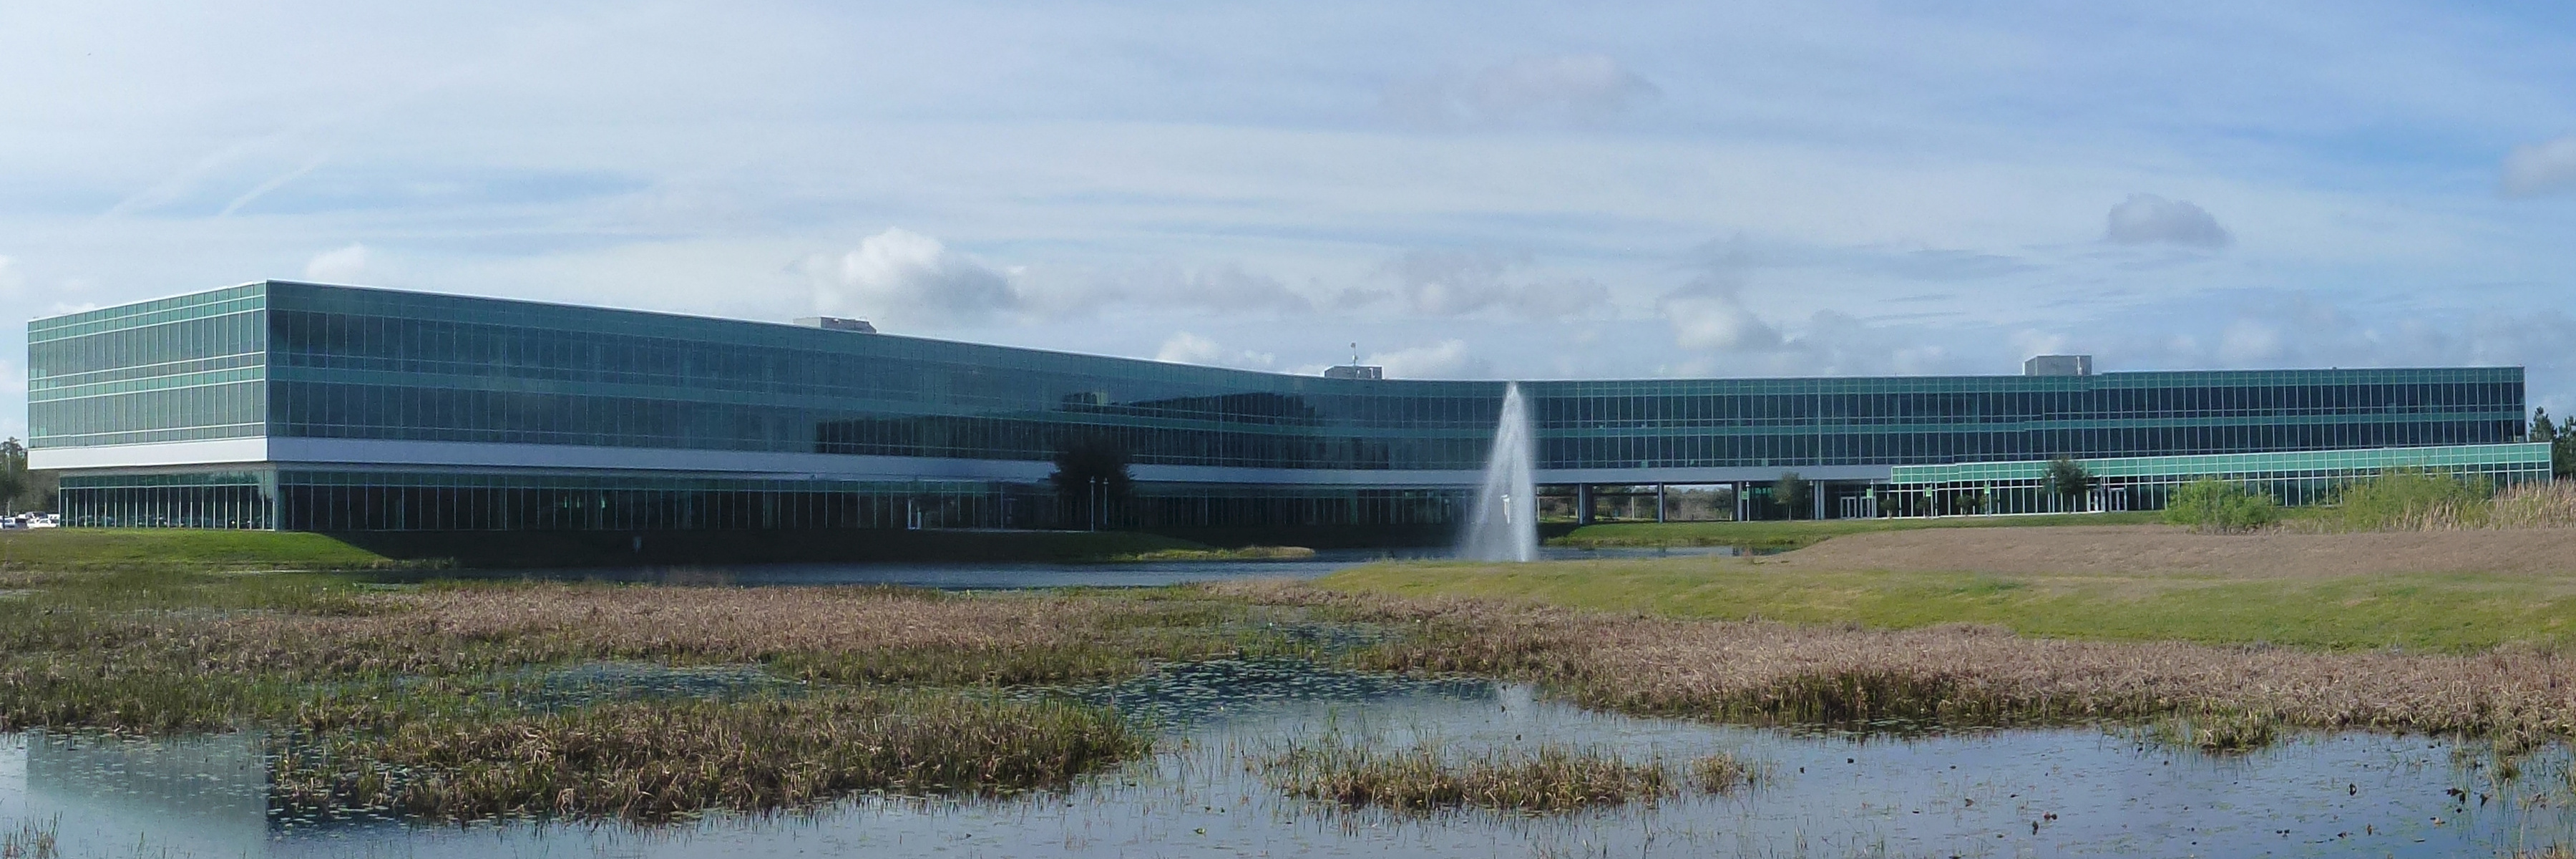 Publix Headquarters Florida